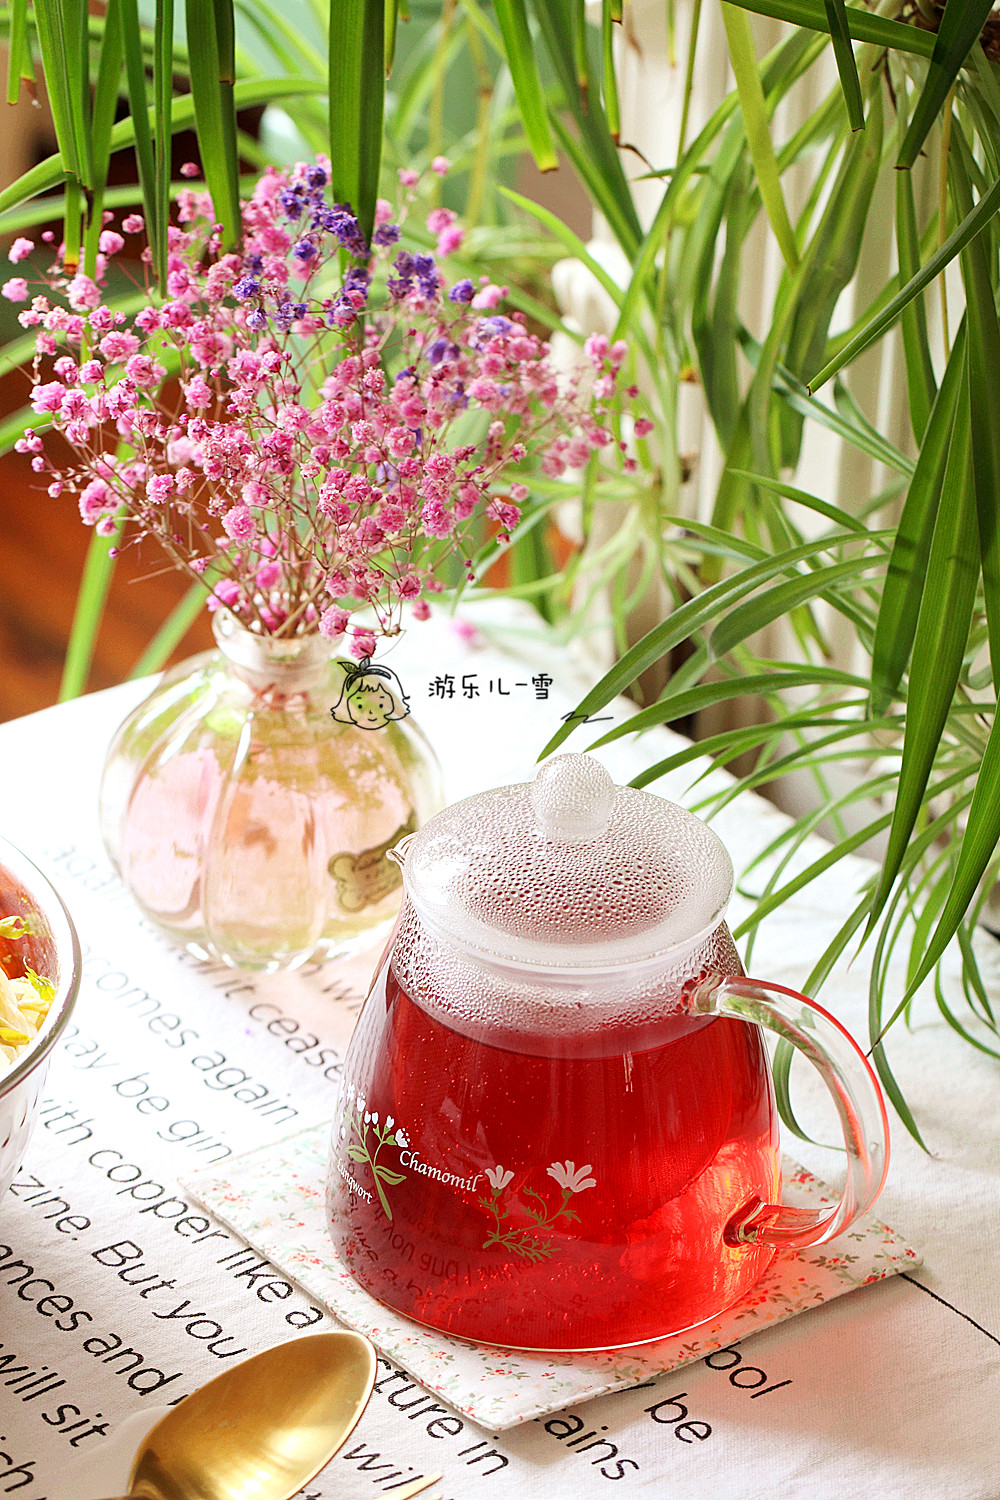 一壶洛神玫瑰花茶,用的北鼎茶包,按花果茶键,美腻好喝滴茶就完成啦